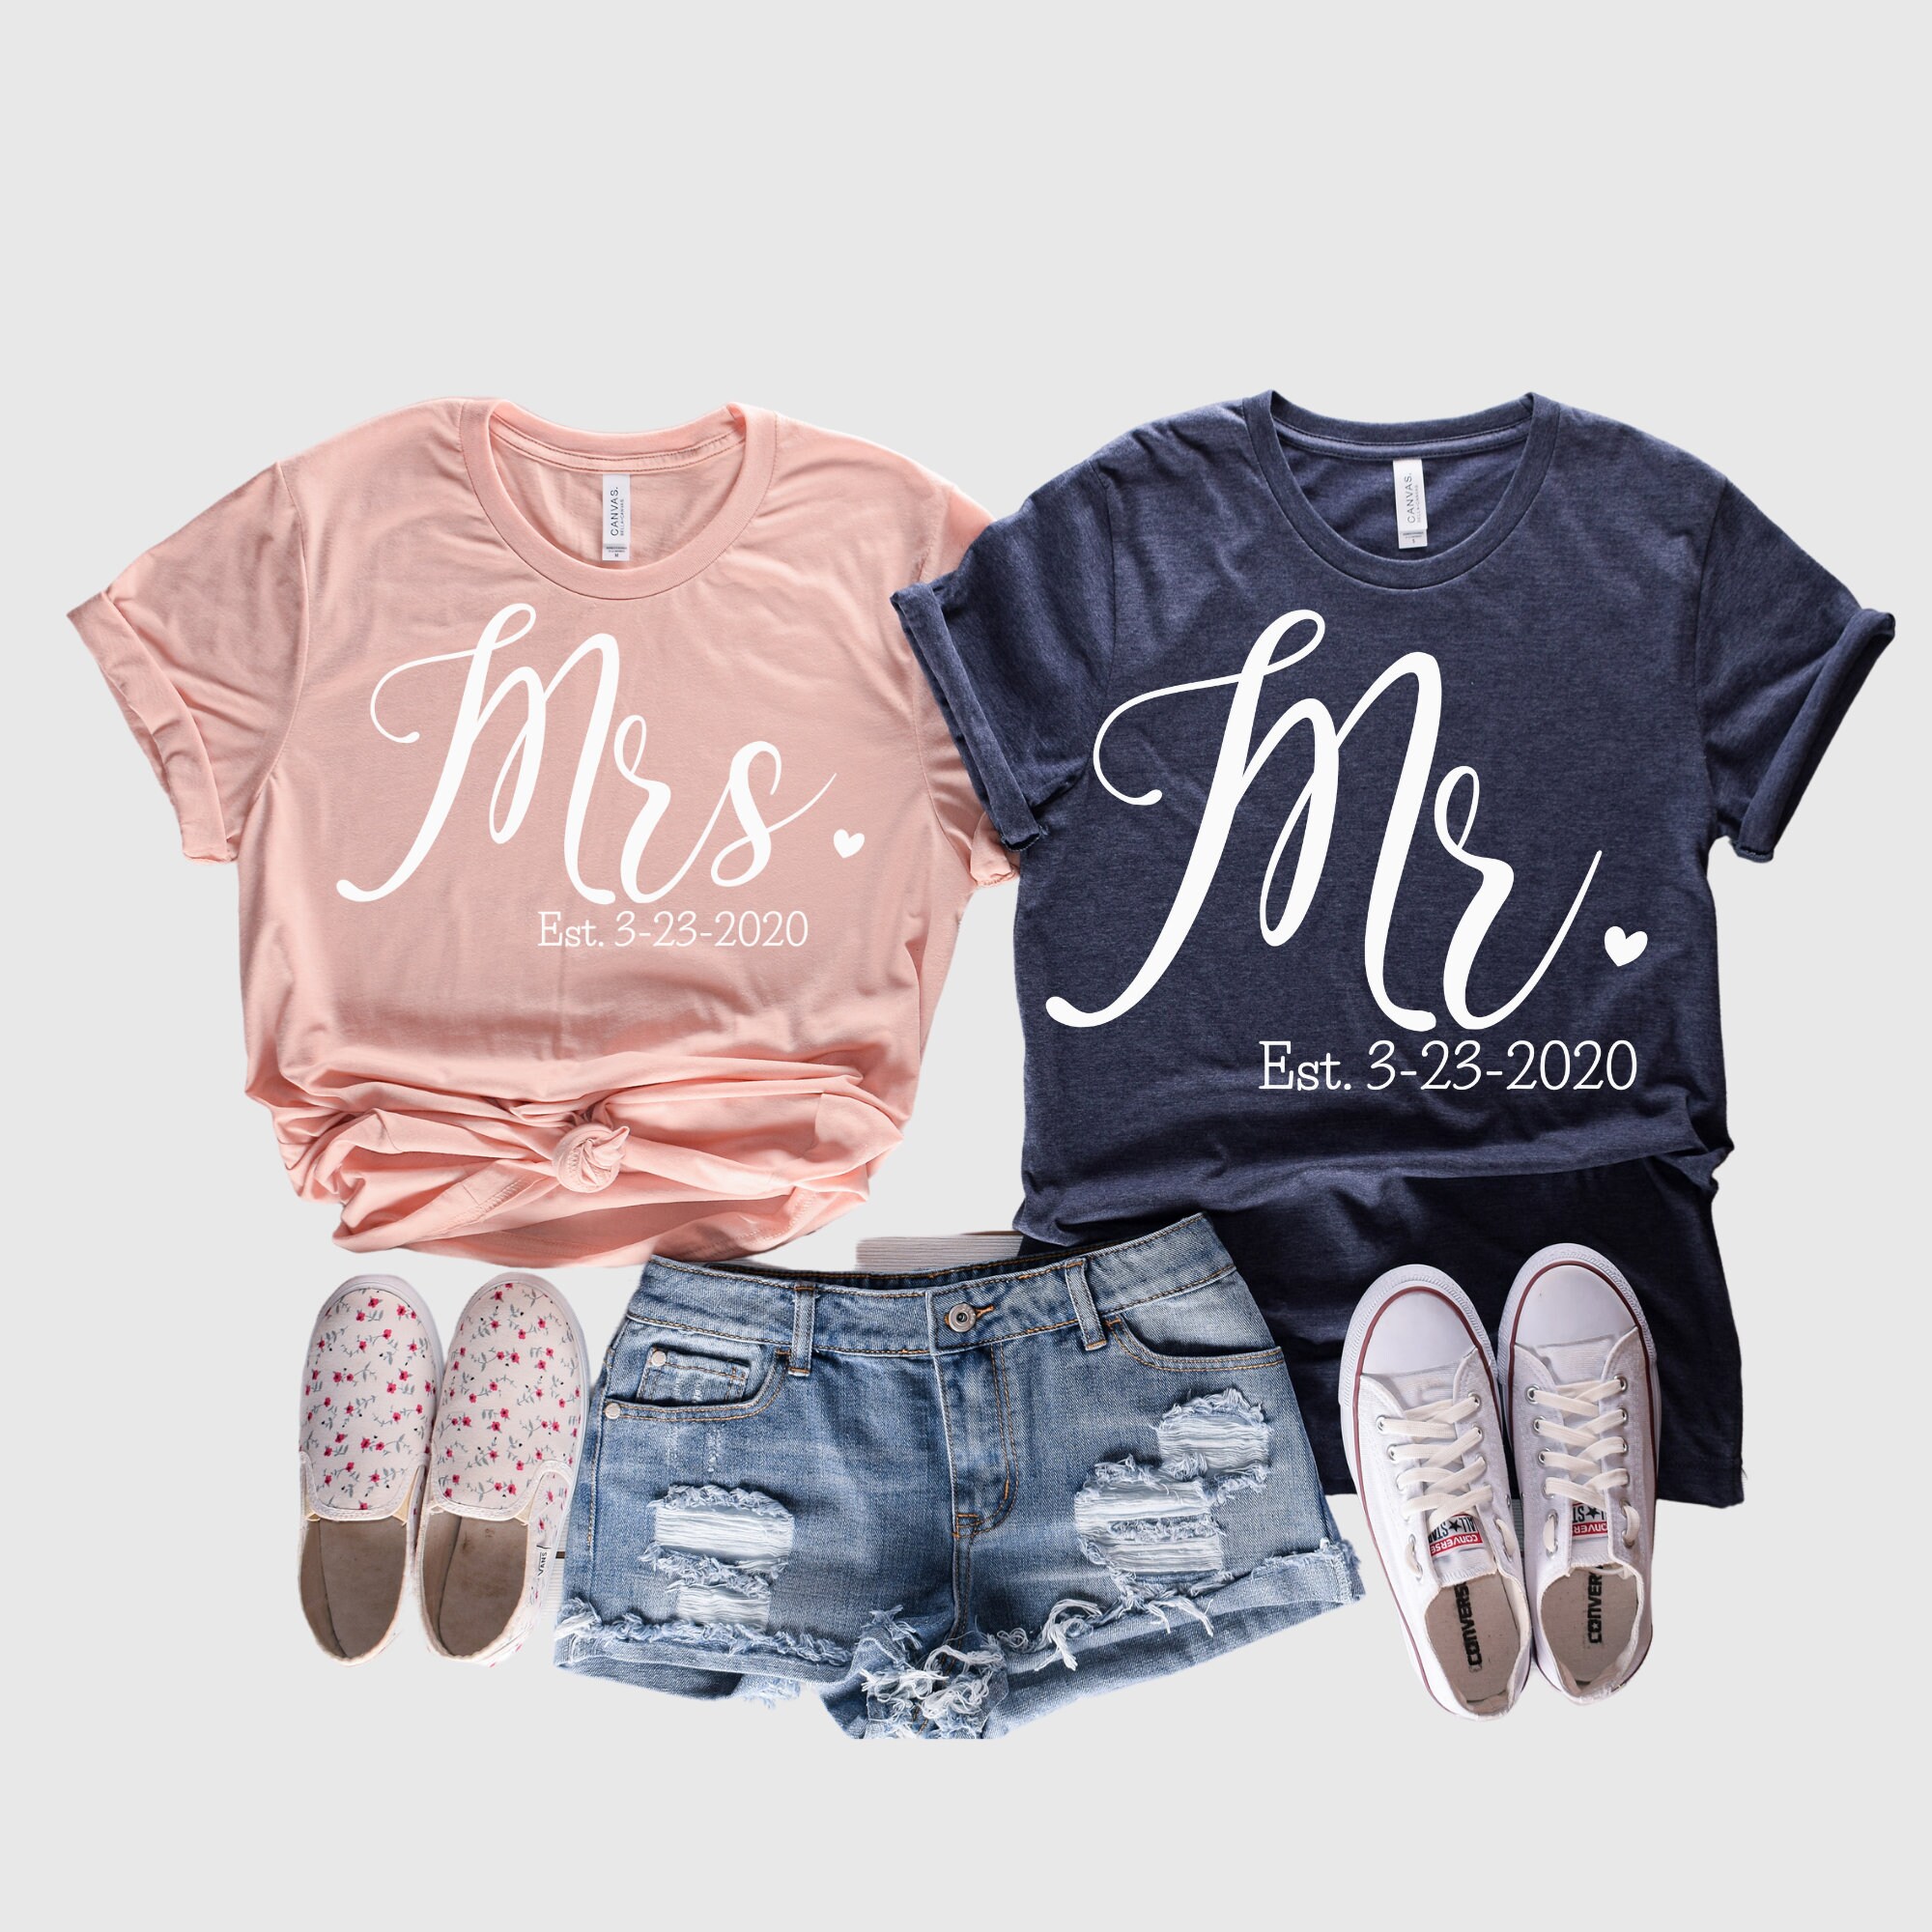 MR & MRS Matching Tshirt-Just MARRIED Matching Tshirt-Newlywed | Etsy